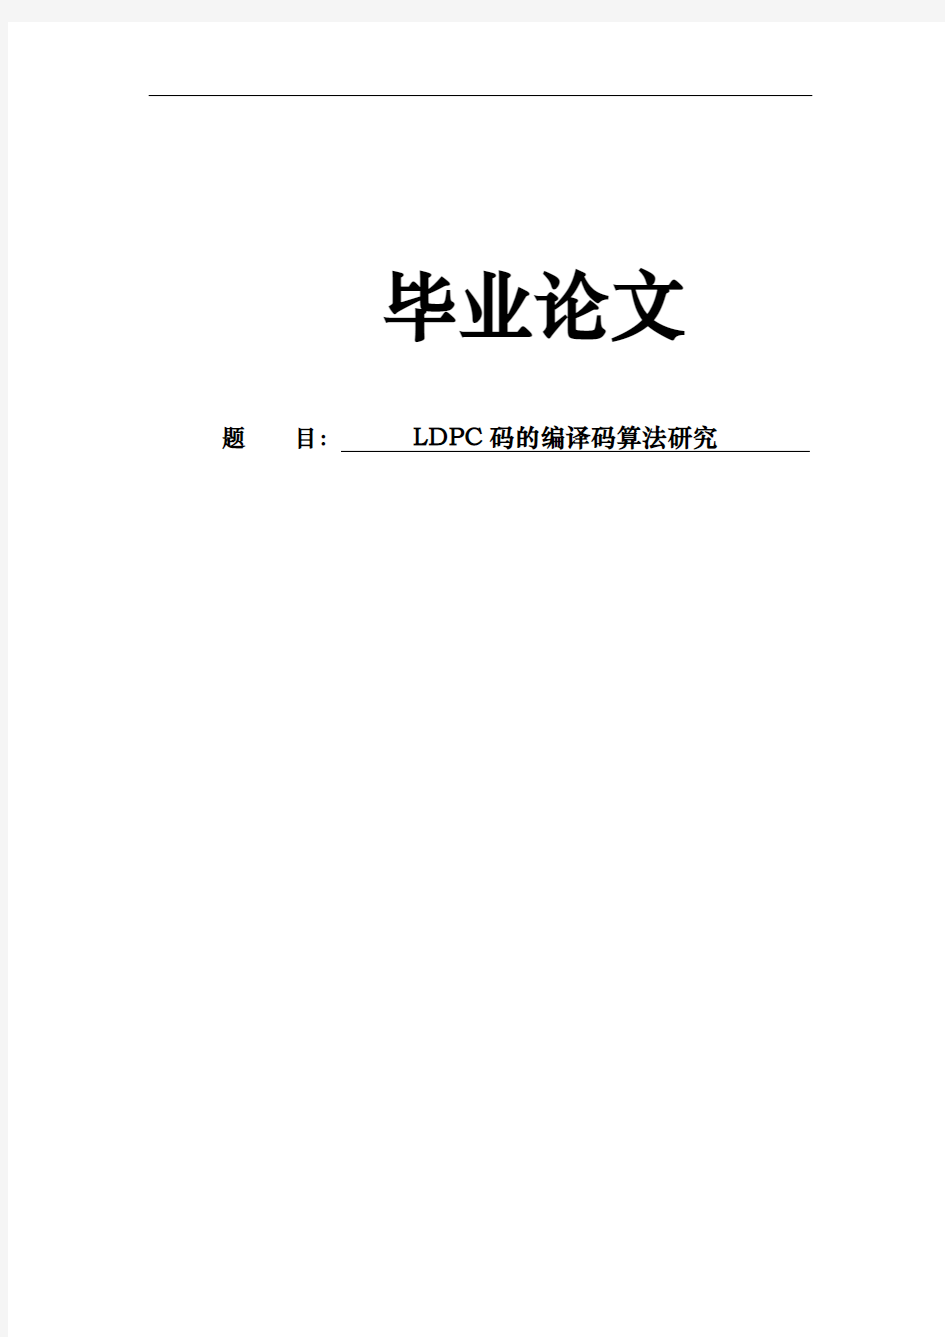 LDPC码的编译码算法研究论文